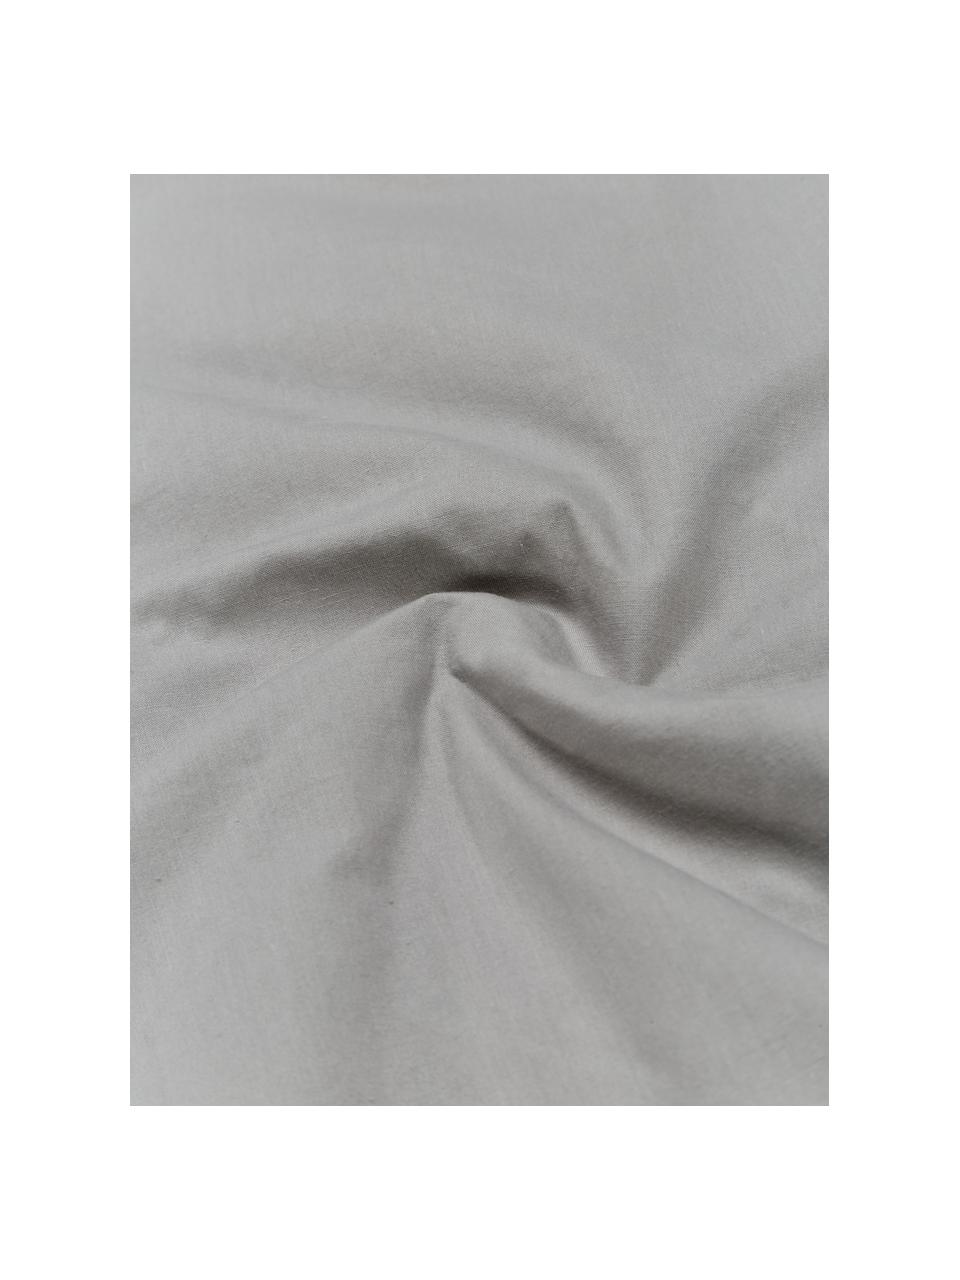 Baumwollperkal-Kissenbezug Faith mit getufteter Verzierung, 100% Baumwolle, Grau, B 50 x L 50 cm